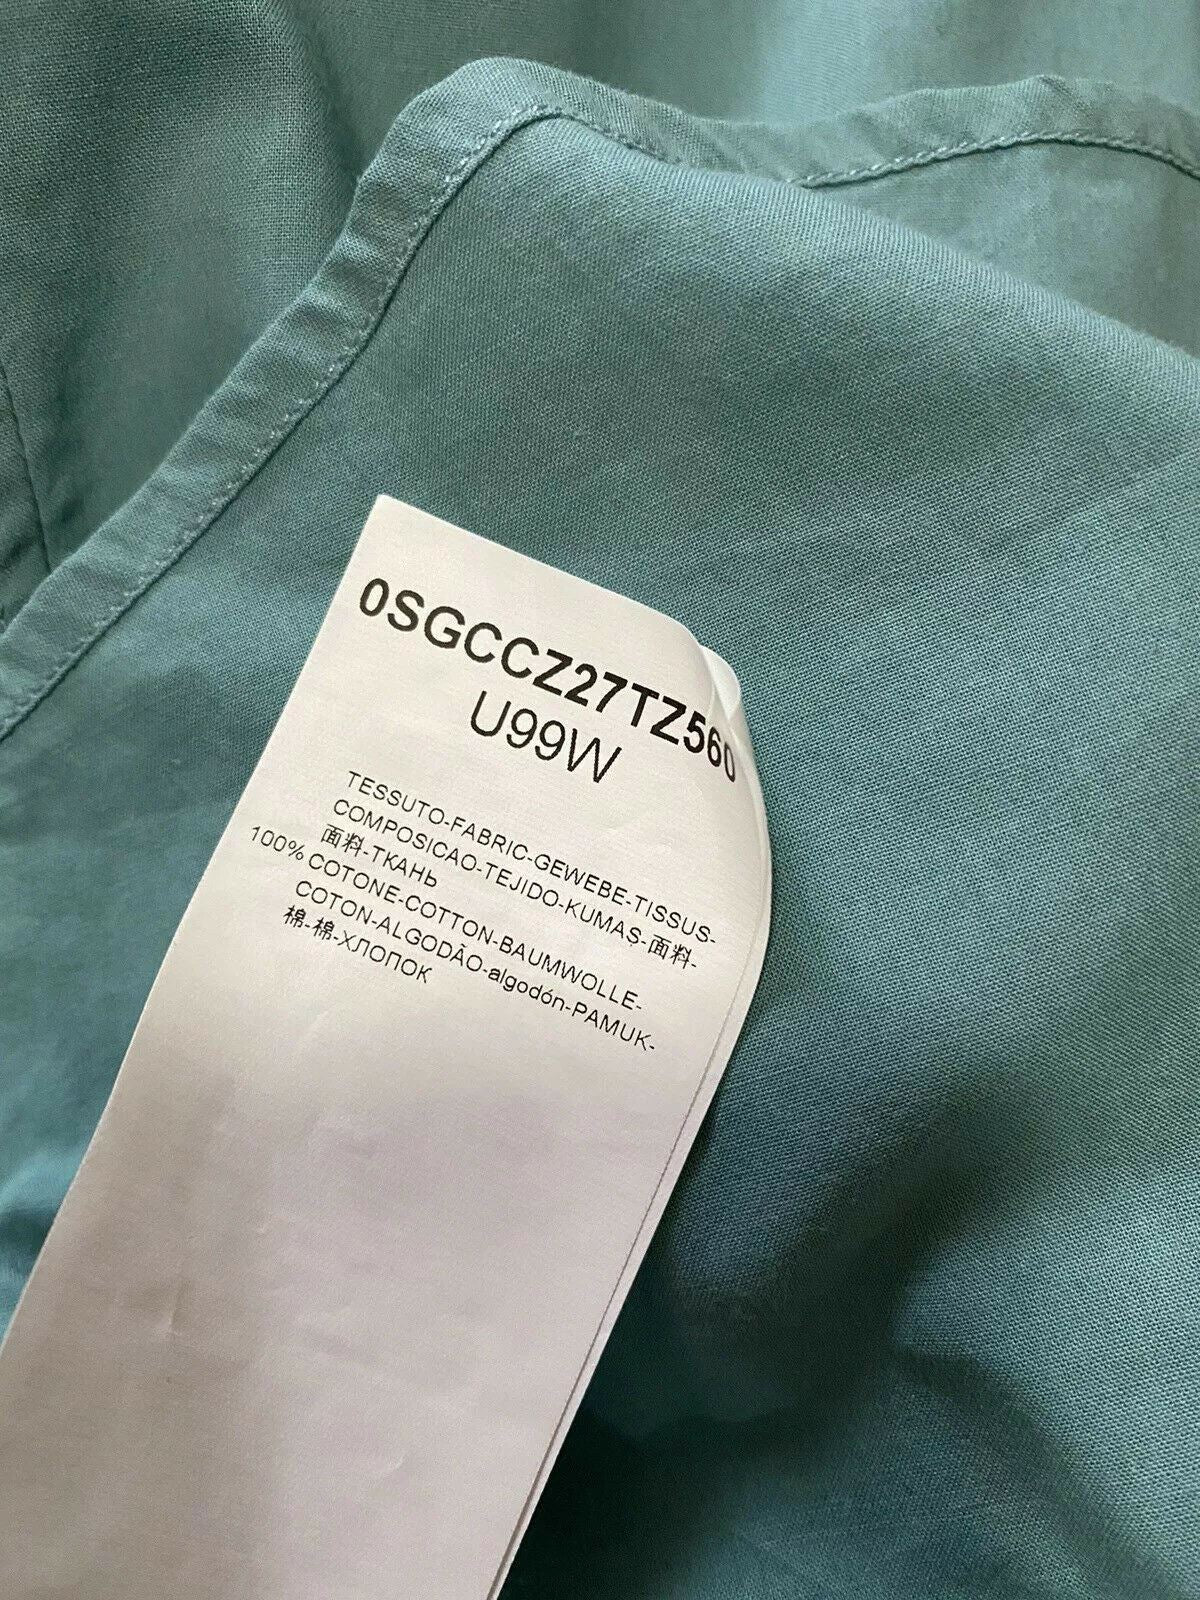 NWT $925 Мужская классическая рубашка Giorgio Armani Королевский синий 39/15,5 Италия